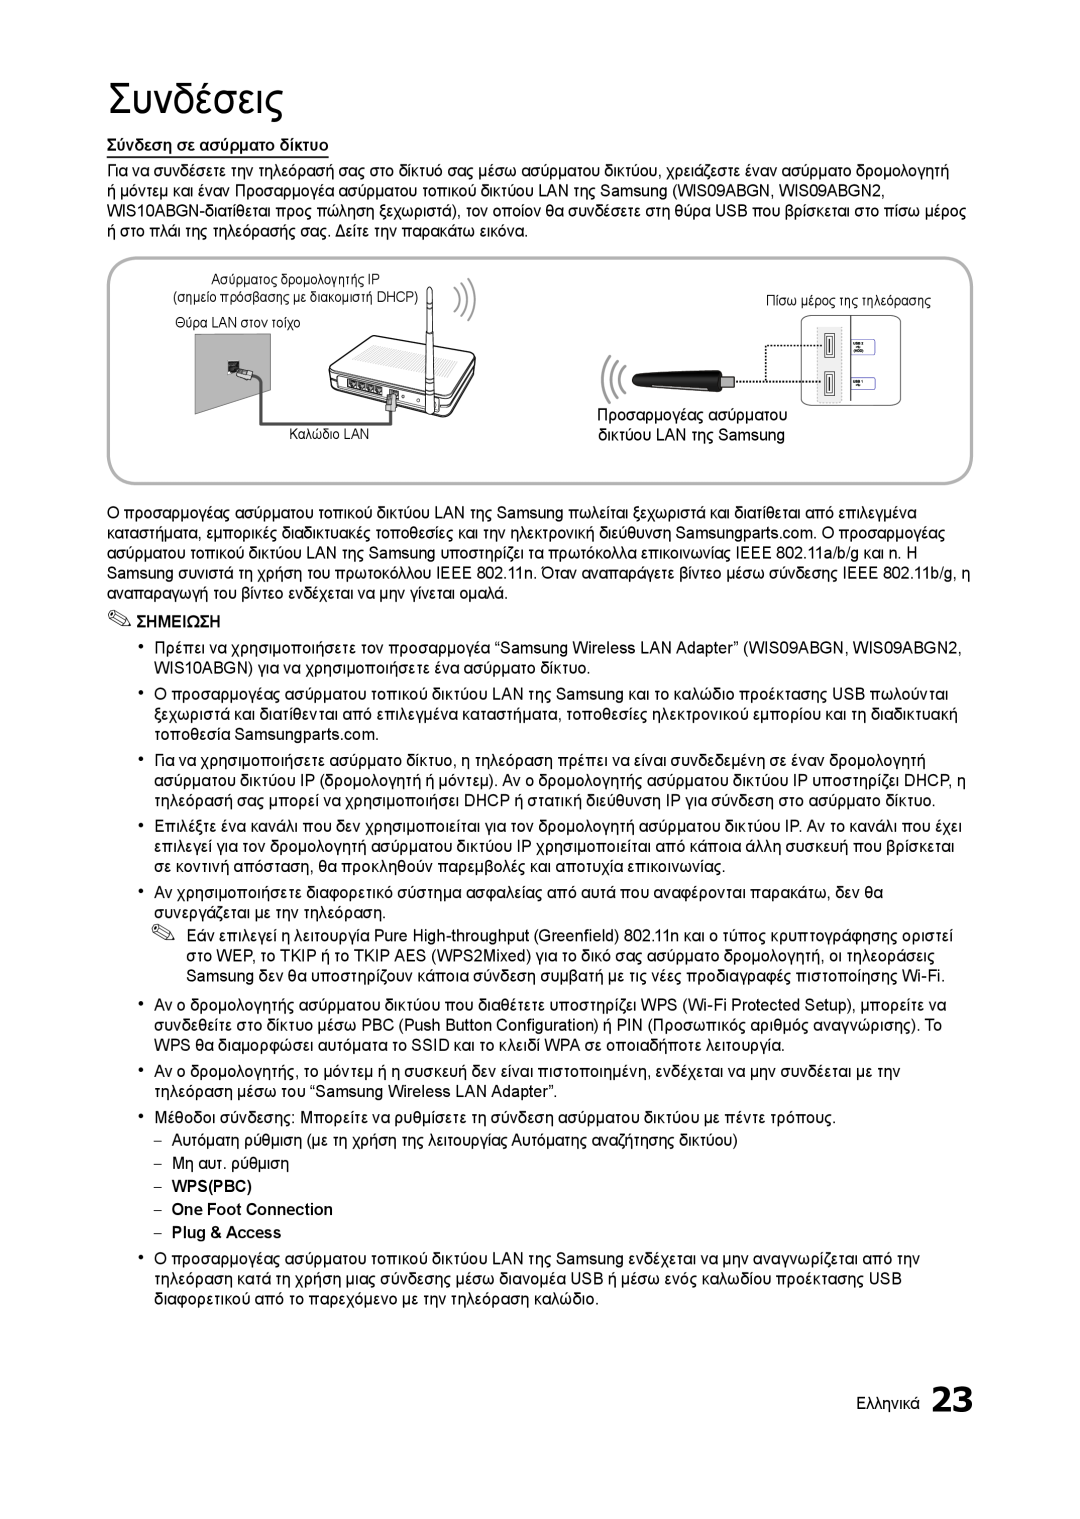 Samsung LT27B750EW/EN manual Συνδέσεις, Σύνδεση σε ασύρματο δίκτυο, Σημειωση, WPSPBC One Foot Connection Plug & Access 